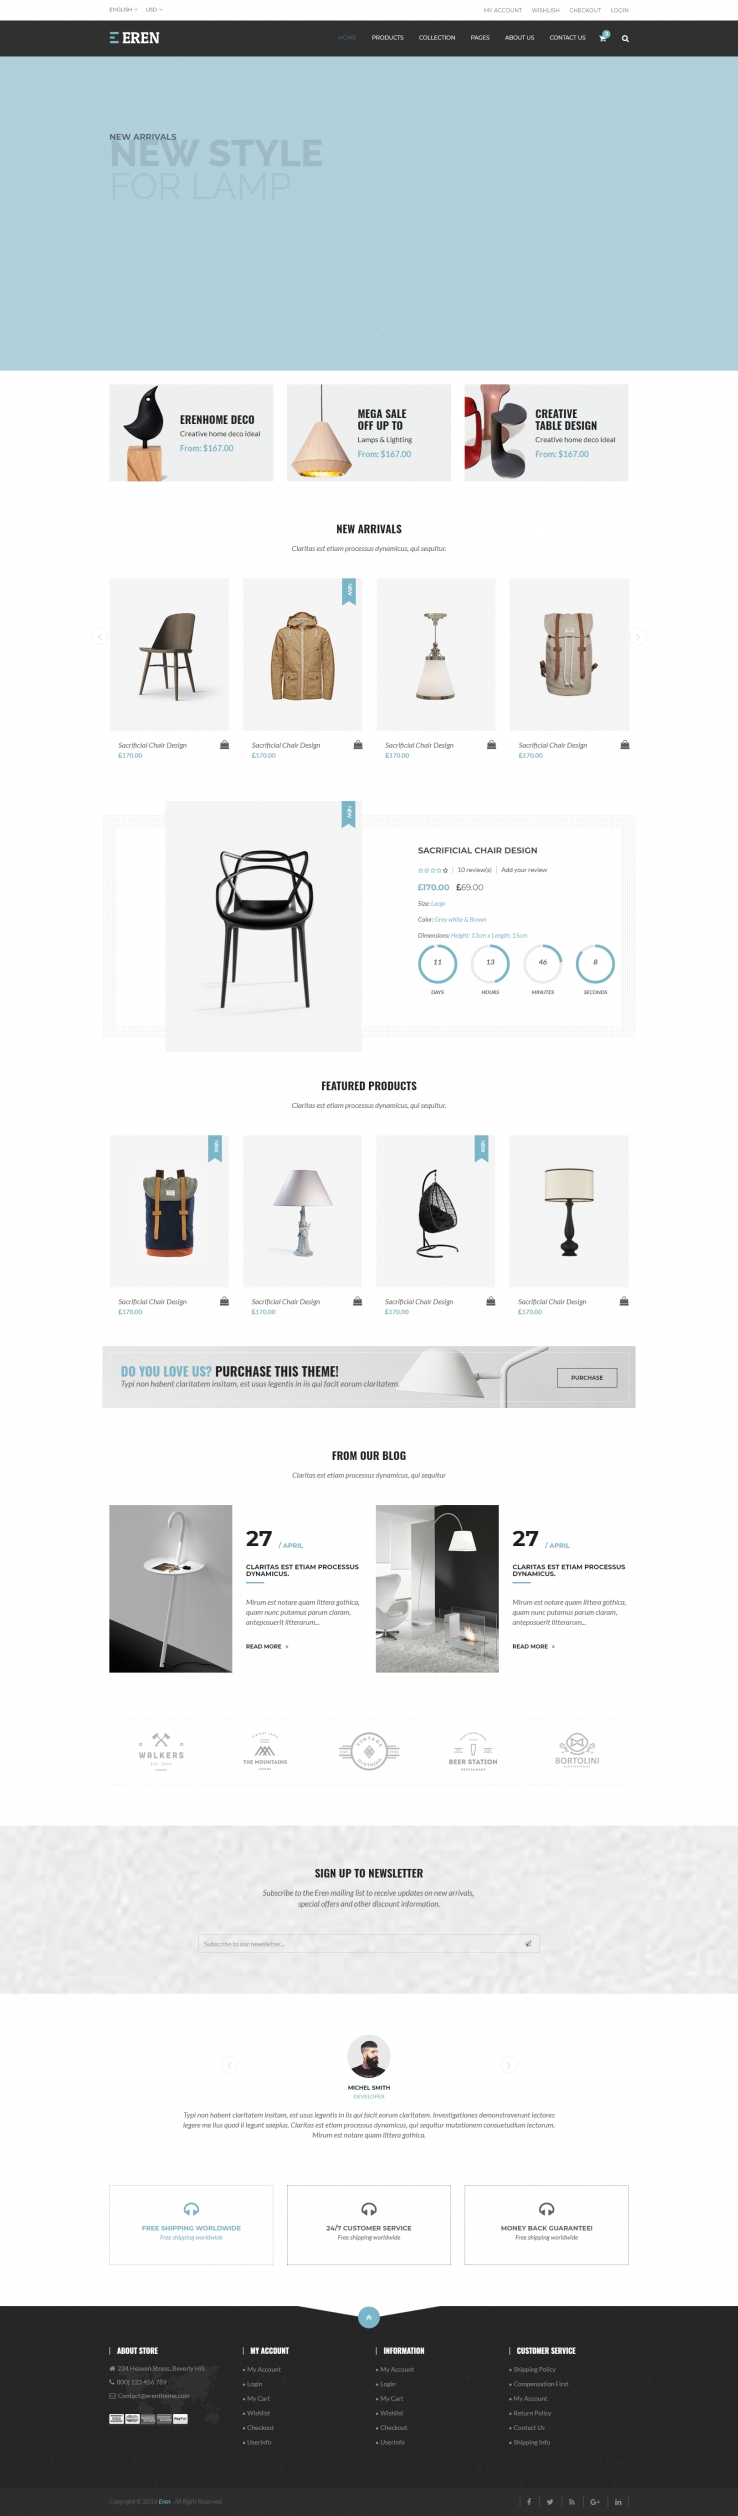 蓝色简洁风格的室内家具装饰商城网站源码下载